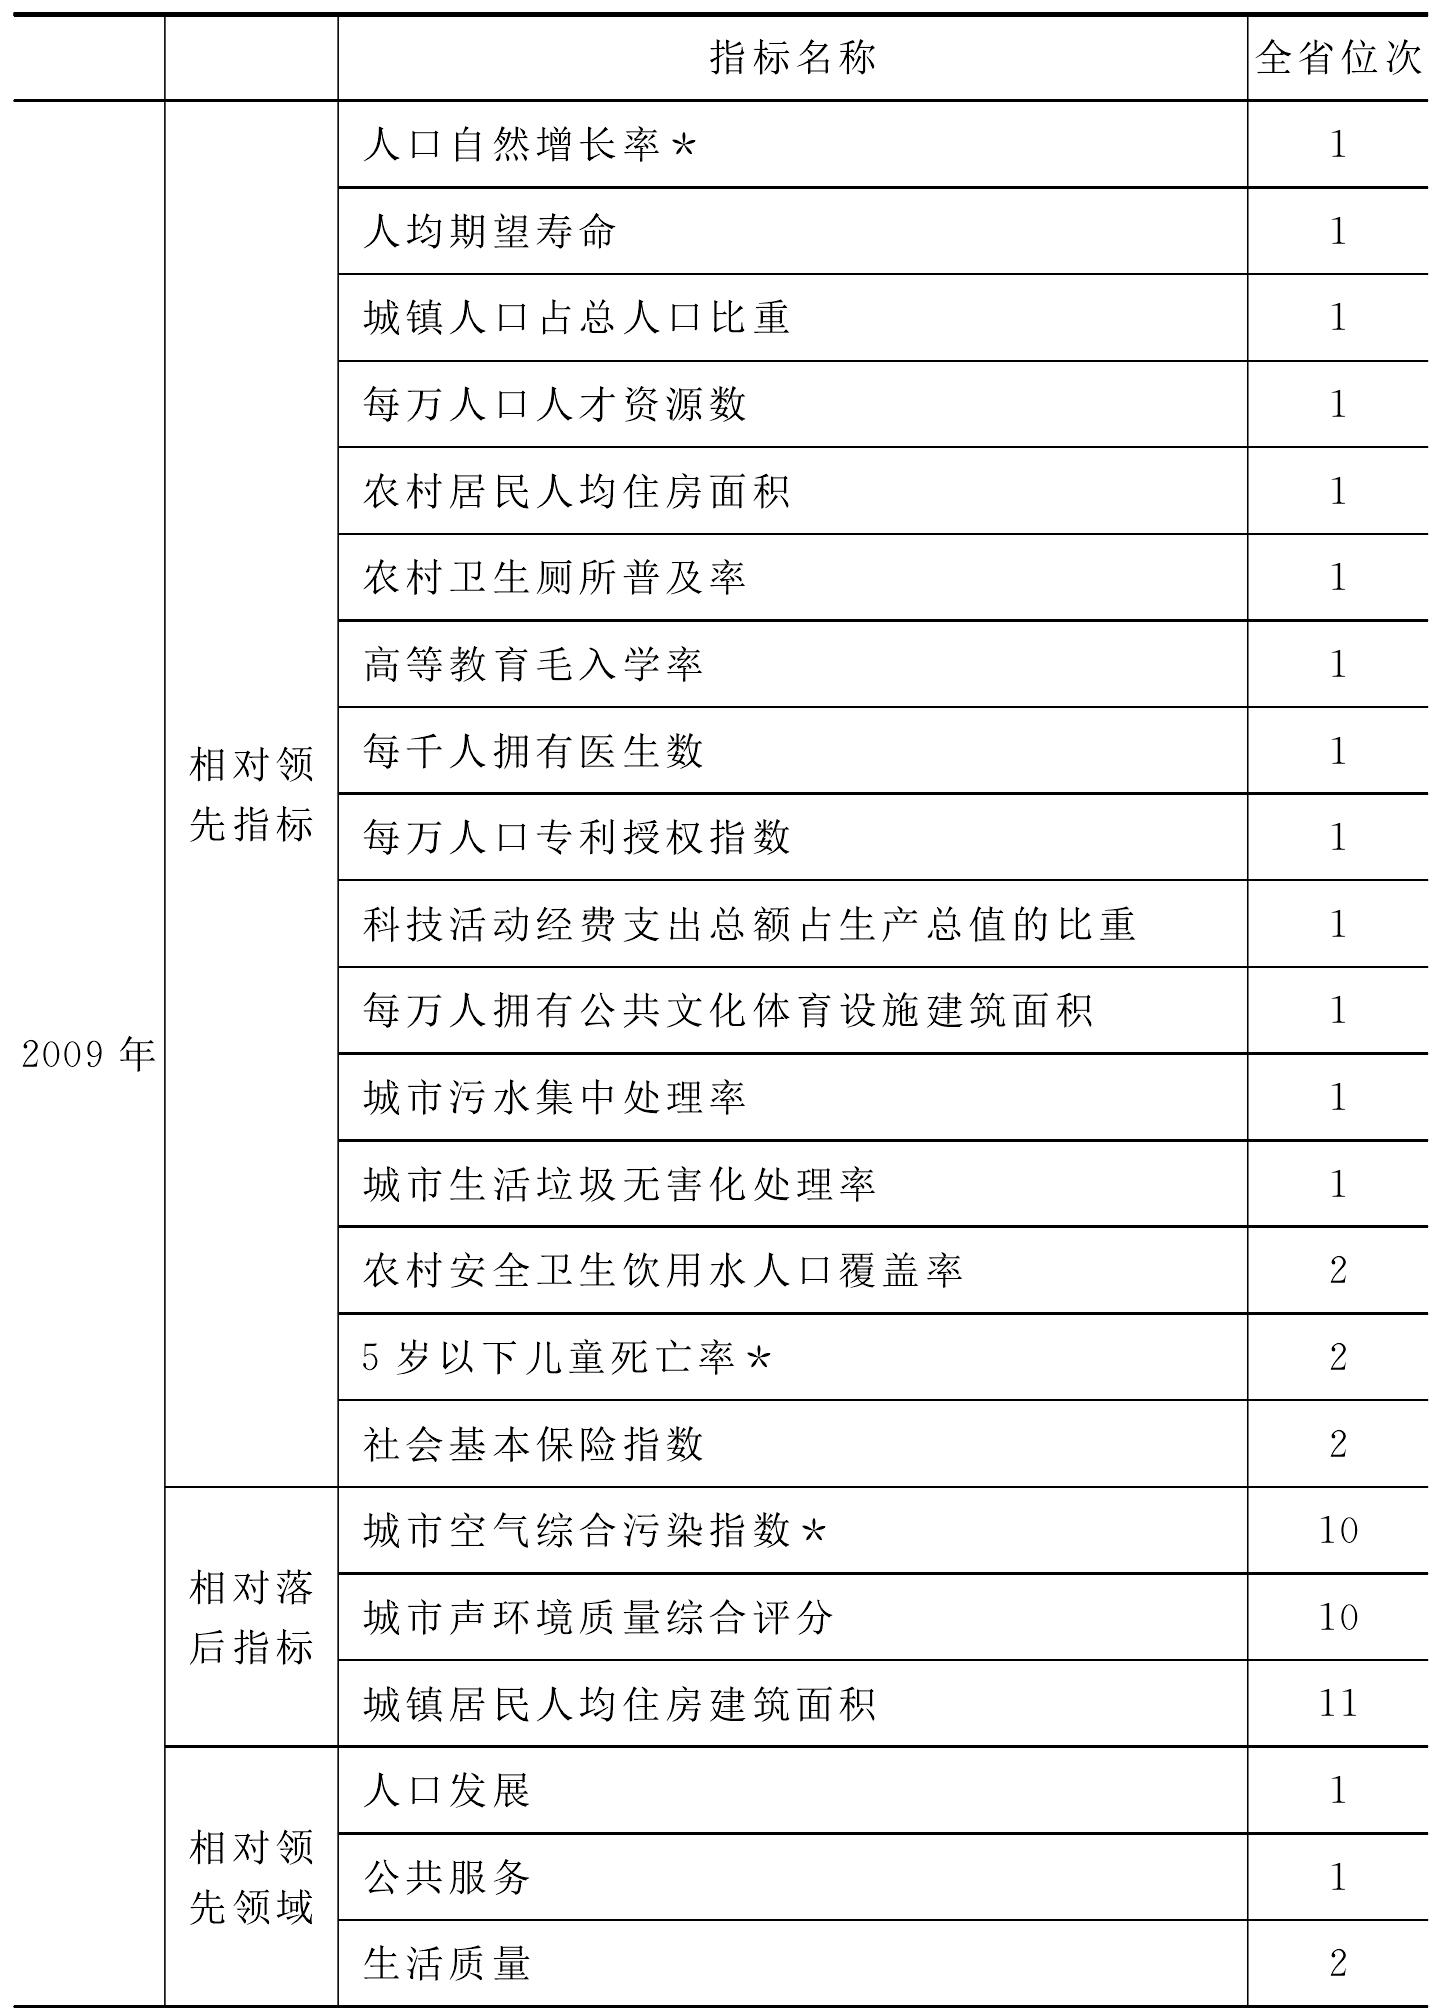 附表6 杭州市相对领先与相对落后指标/领域